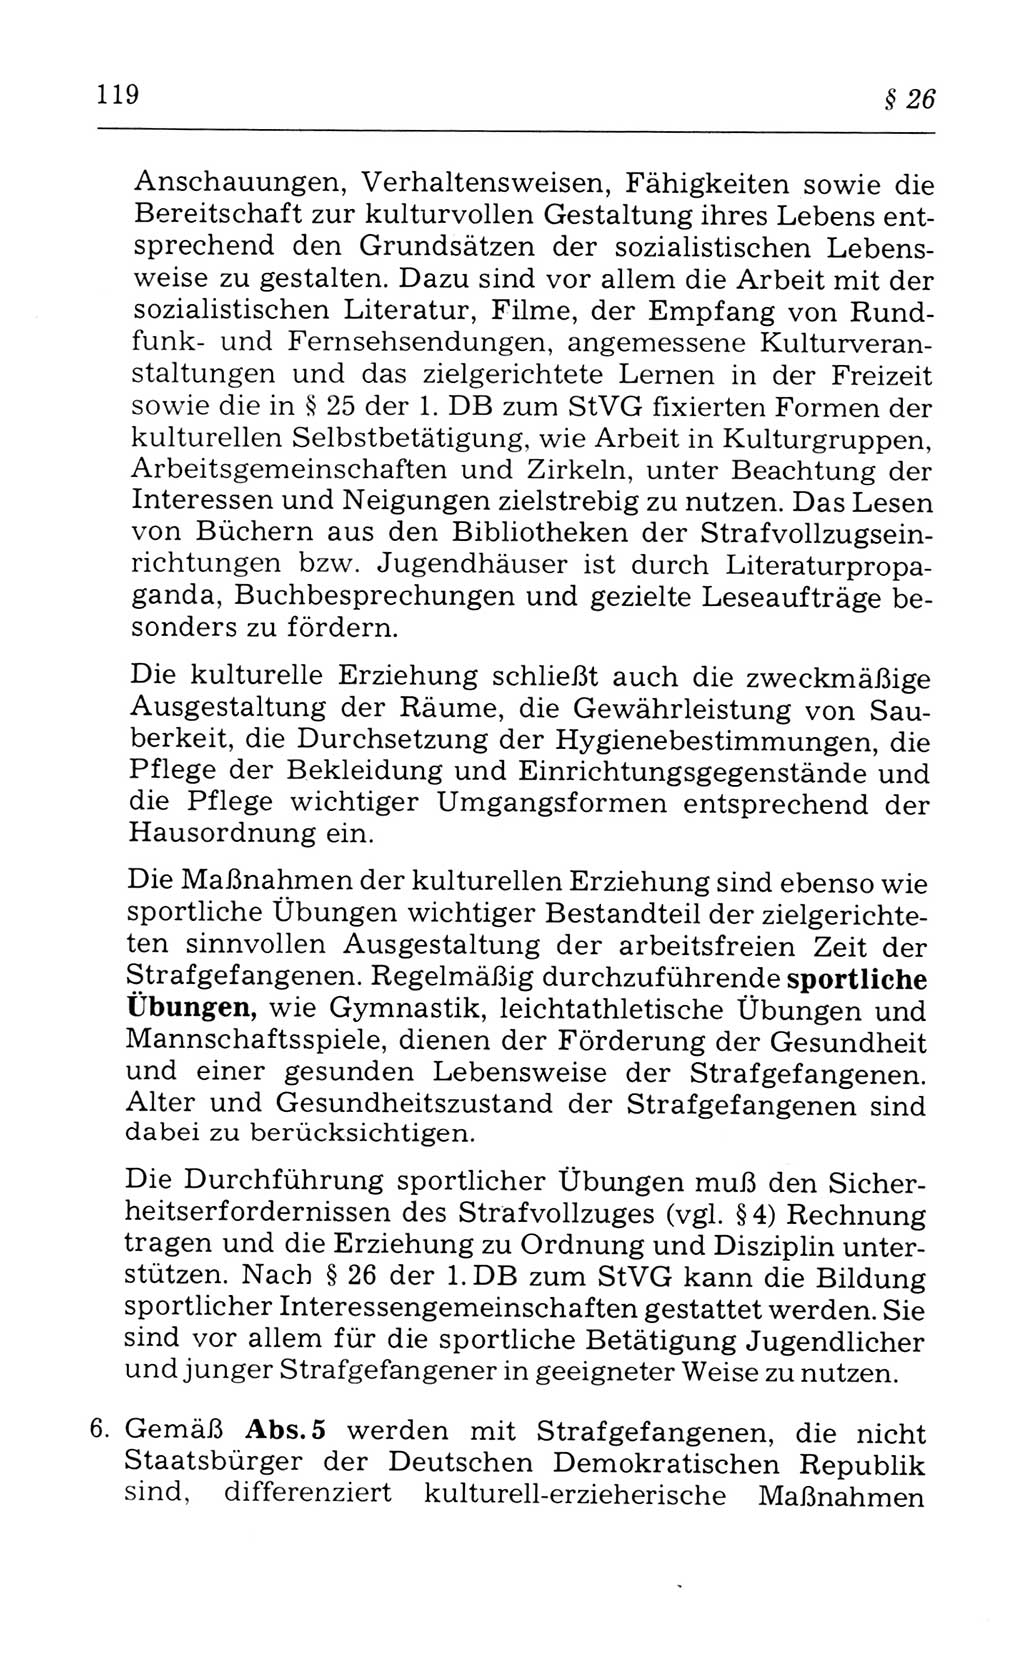 Kommentar zum Strafvollzugsgesetz [(StVG) Deutsche Demokratische Republik (DDR)] 1980, Seite 119 (Komm. StVG DDR 1980, S. 119)